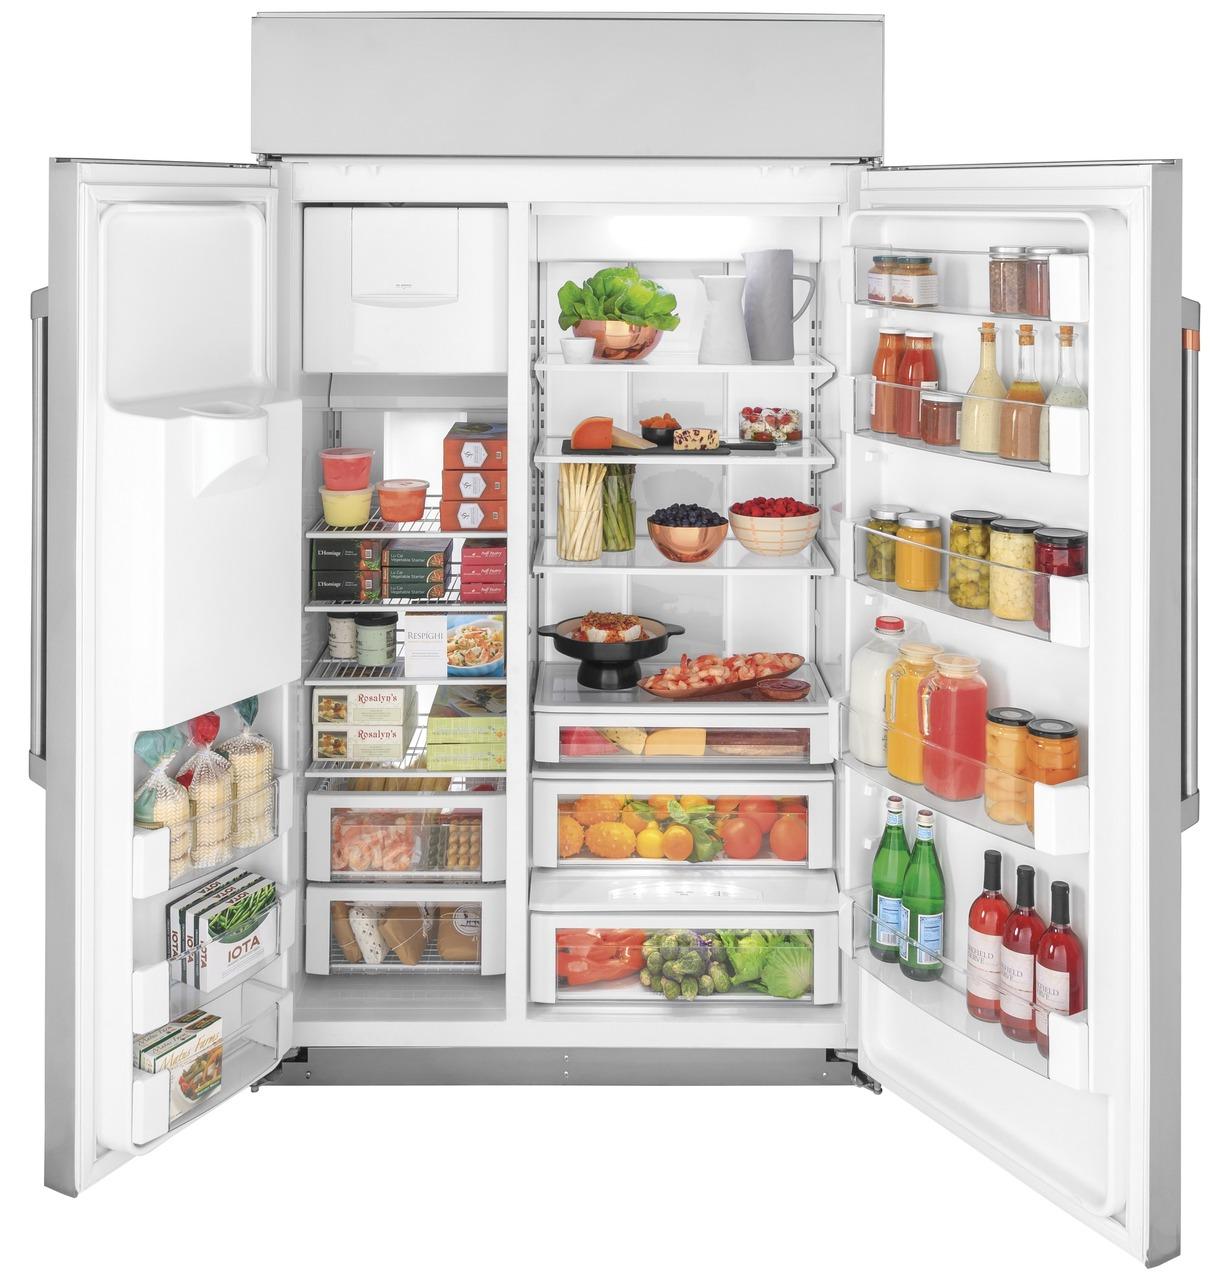 Caf(eback)™ 48" Smart Built-In Side-by-Side Refrigerator with Dispenser